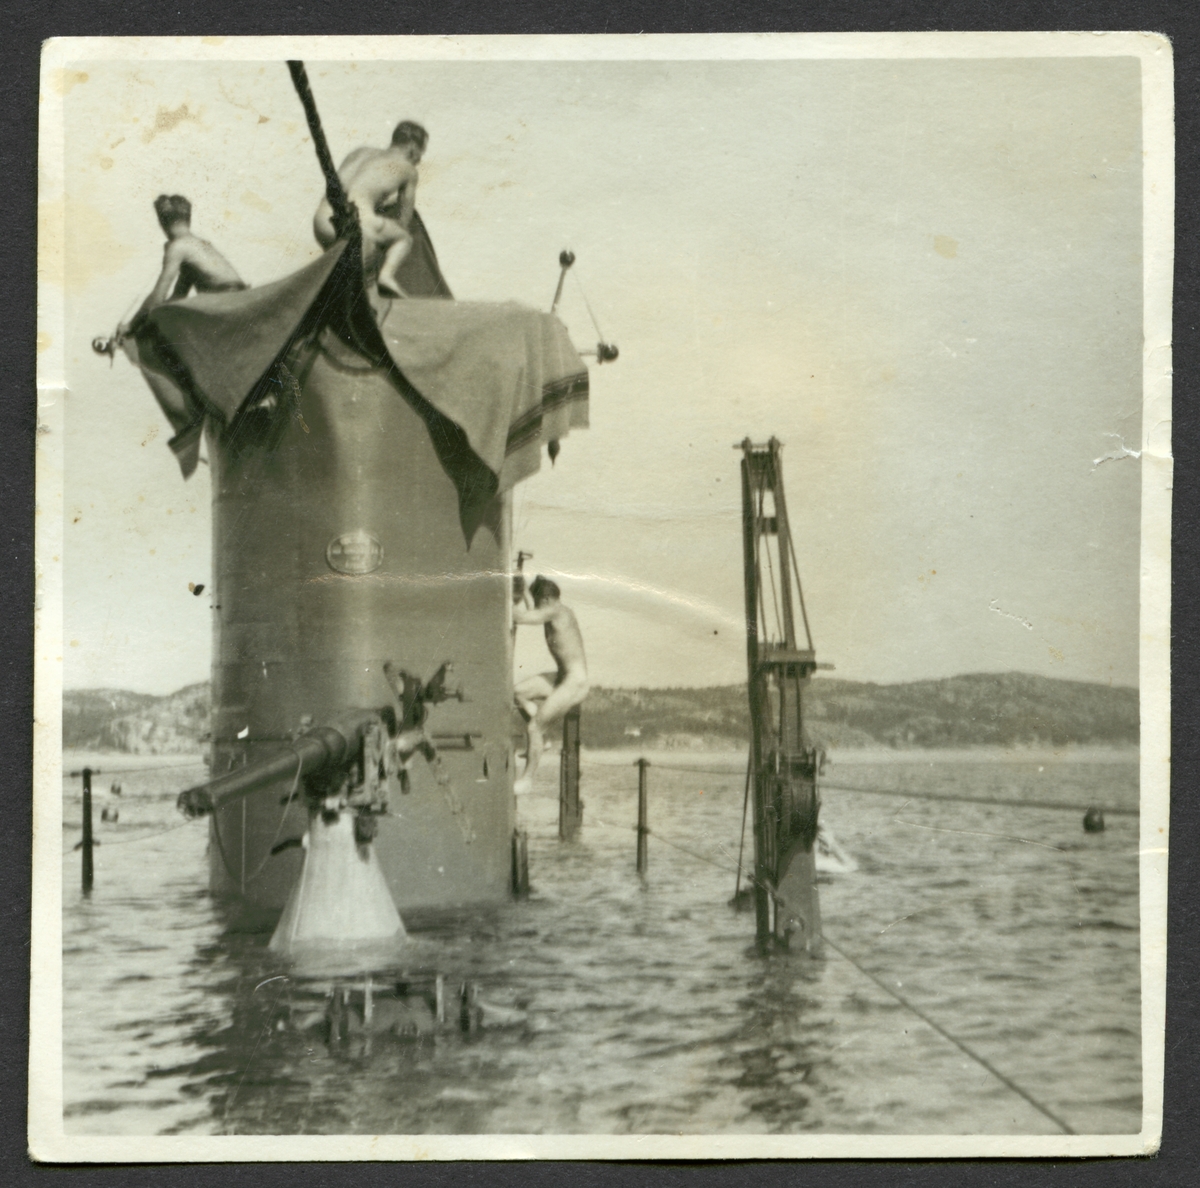 Bilden visar ubåten Najad vars däck ligger under vatten, bara tornet och överbyggnader sticker ut. På tornet syns tre nakna ubåts soldater, den ena håller på att klättra upp på sida av tornet. Runt omkring i vattnet syns fler besättnings män som badar.